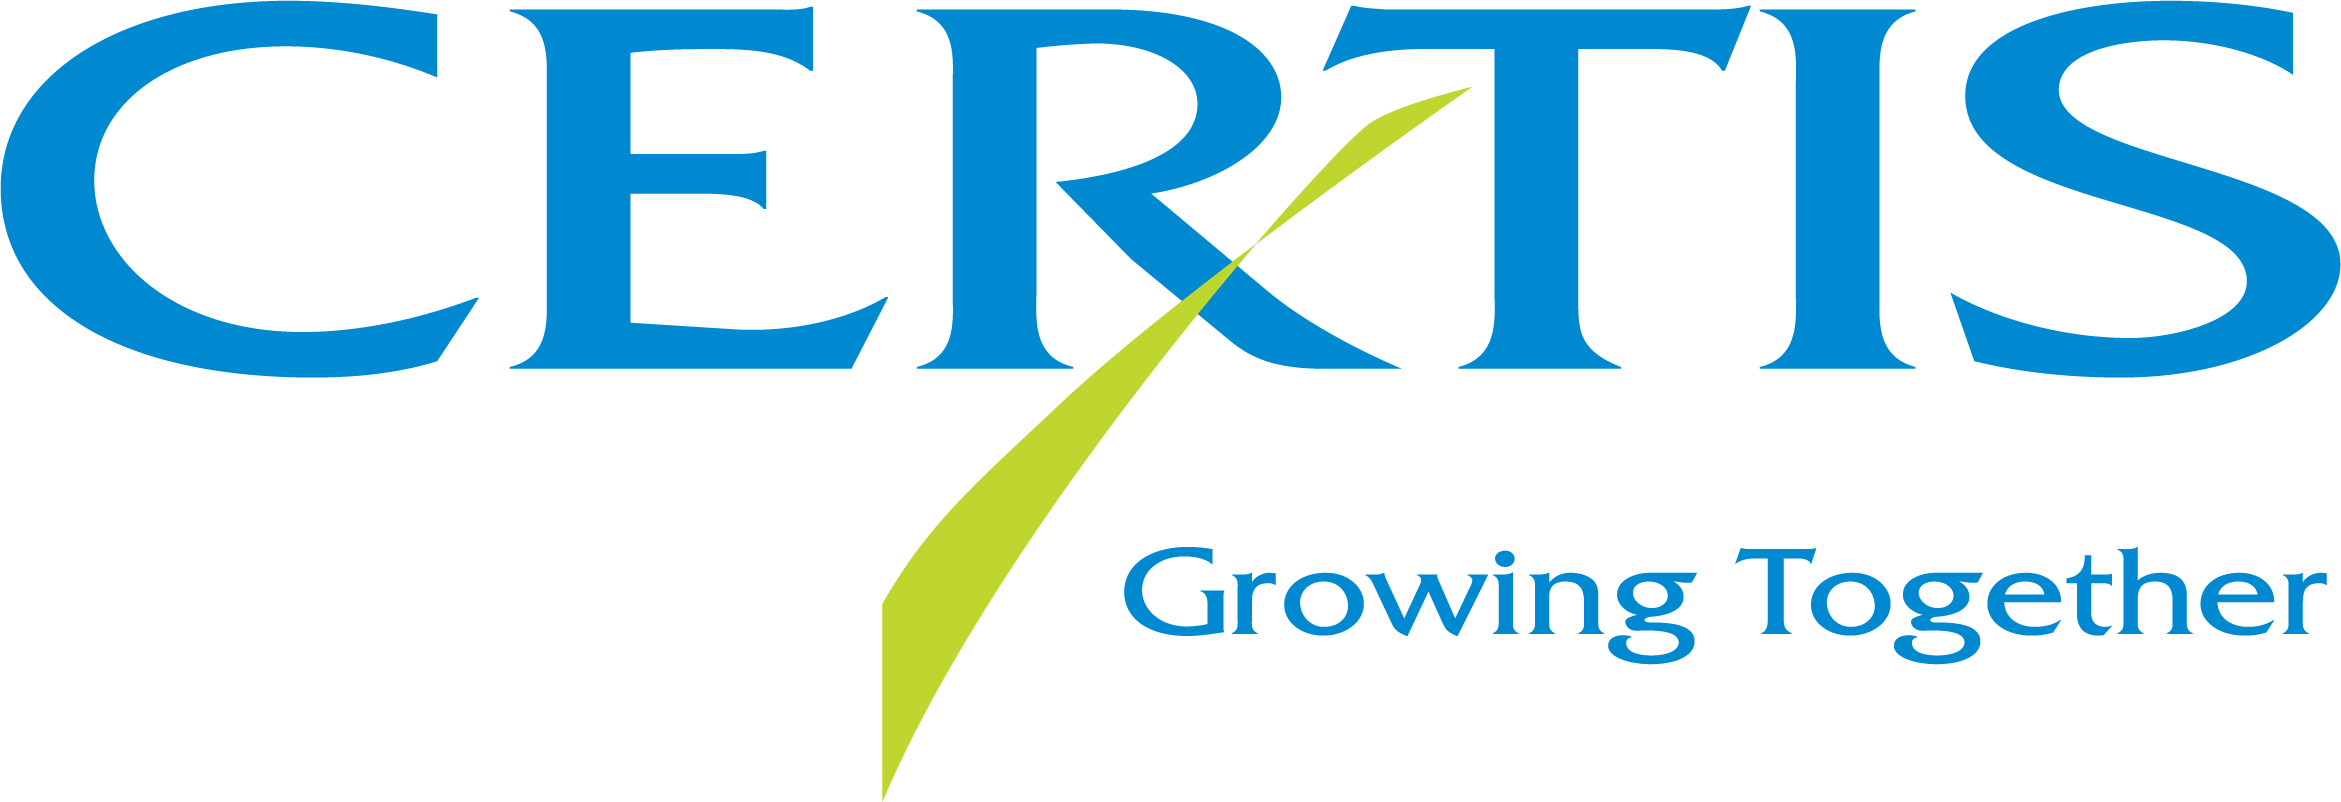 CERTIS logo 040520